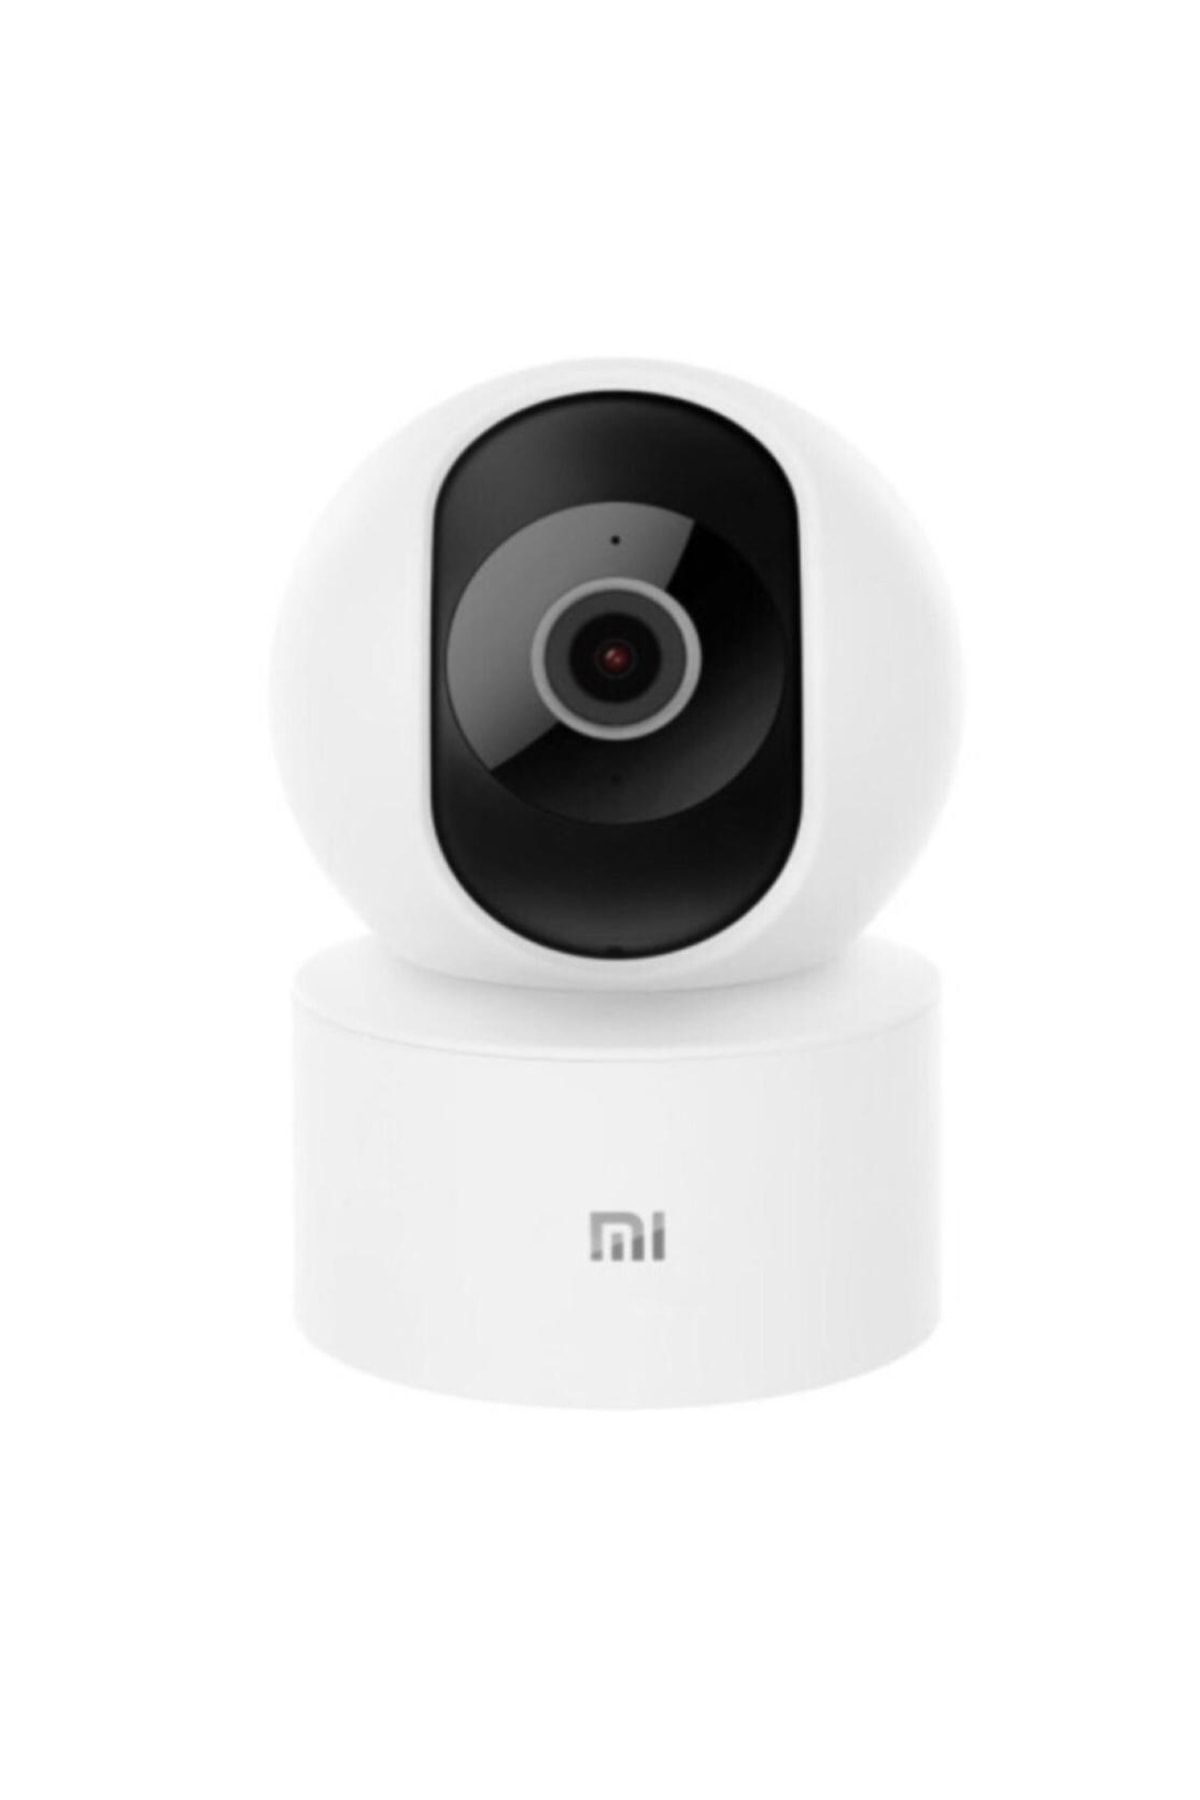 Xiaomi Güvenlik Kamera - Gizli Kamera / Bebek Kamerası / Bakıcı Kamerası - 1080p Kamera - Security Camera